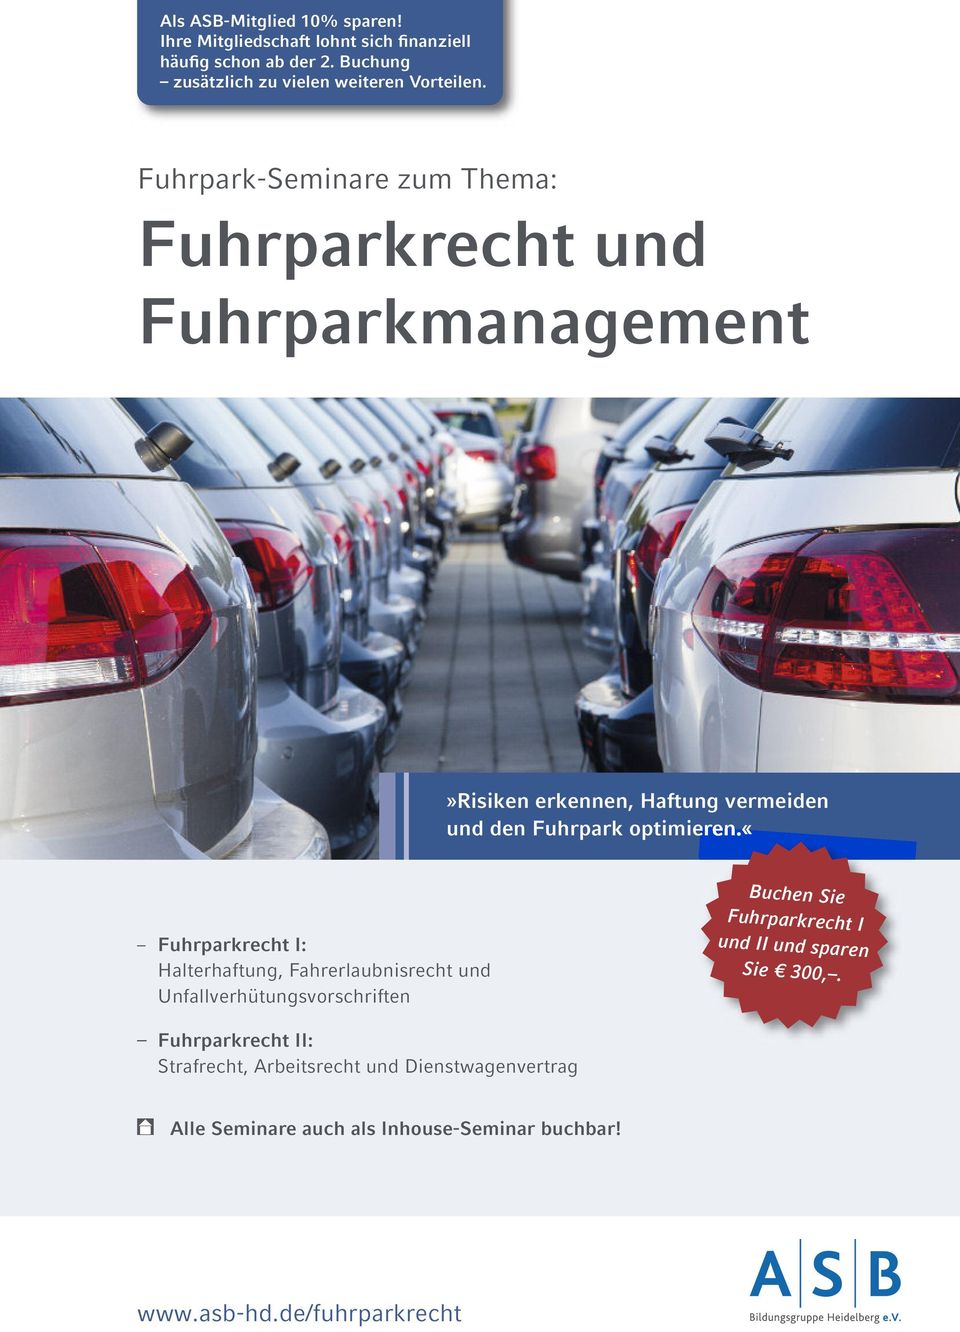 Fuhrpark-Seminare zum Thema: Fuhrparkrecht und Fuhrparkmanagement»Risiken erkennen, Haftung vermeiden und den Fuhrpark optimieren.